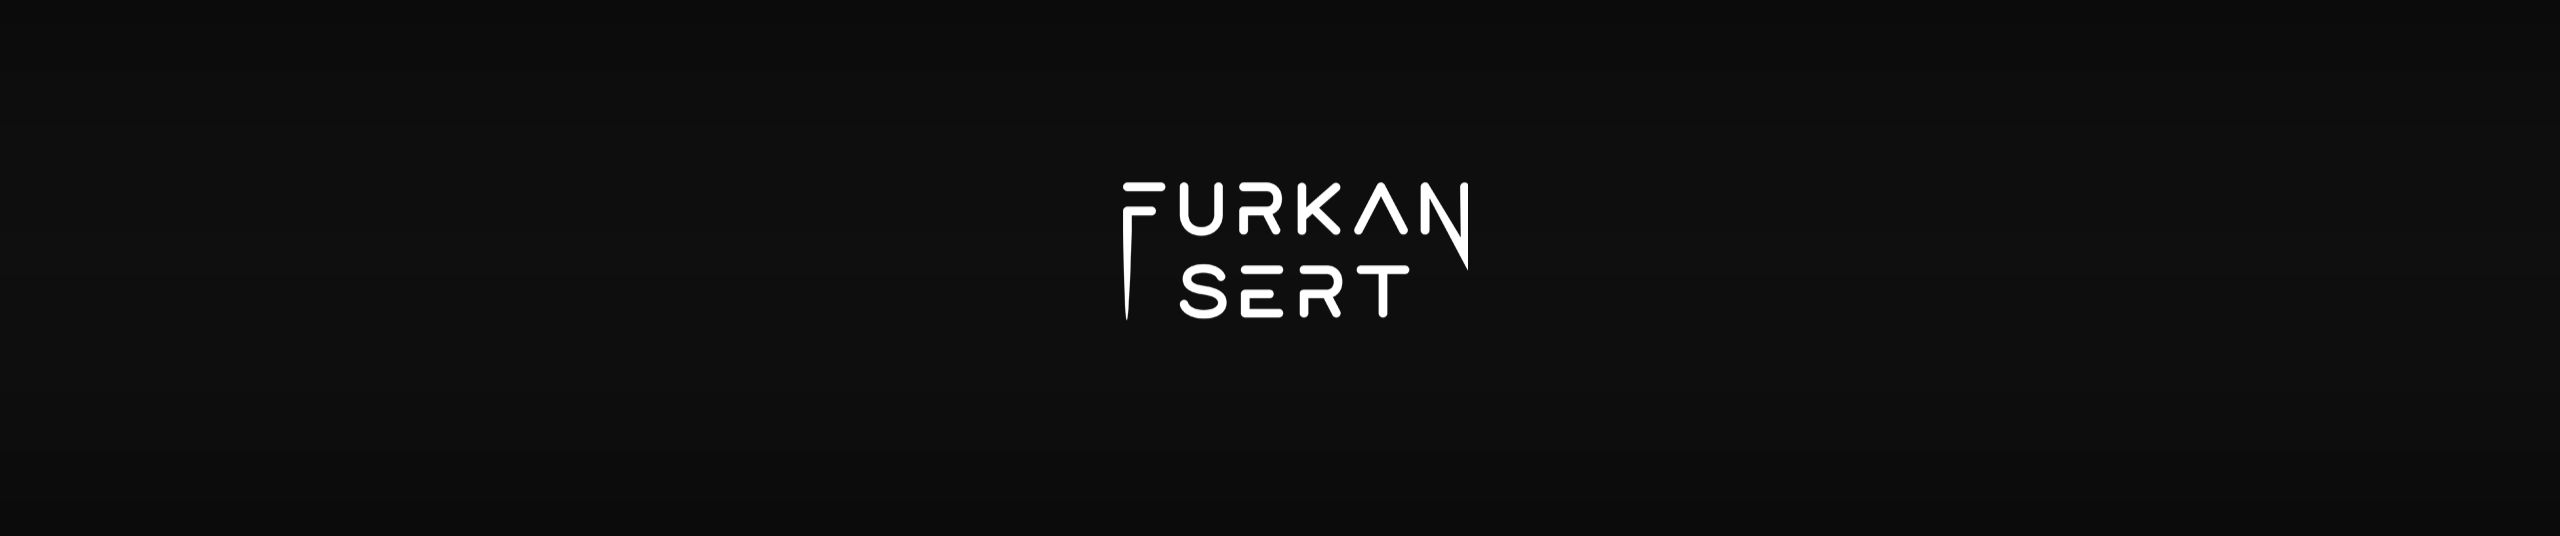 Furkan Sert Muslim Ari Leave Me Mp3